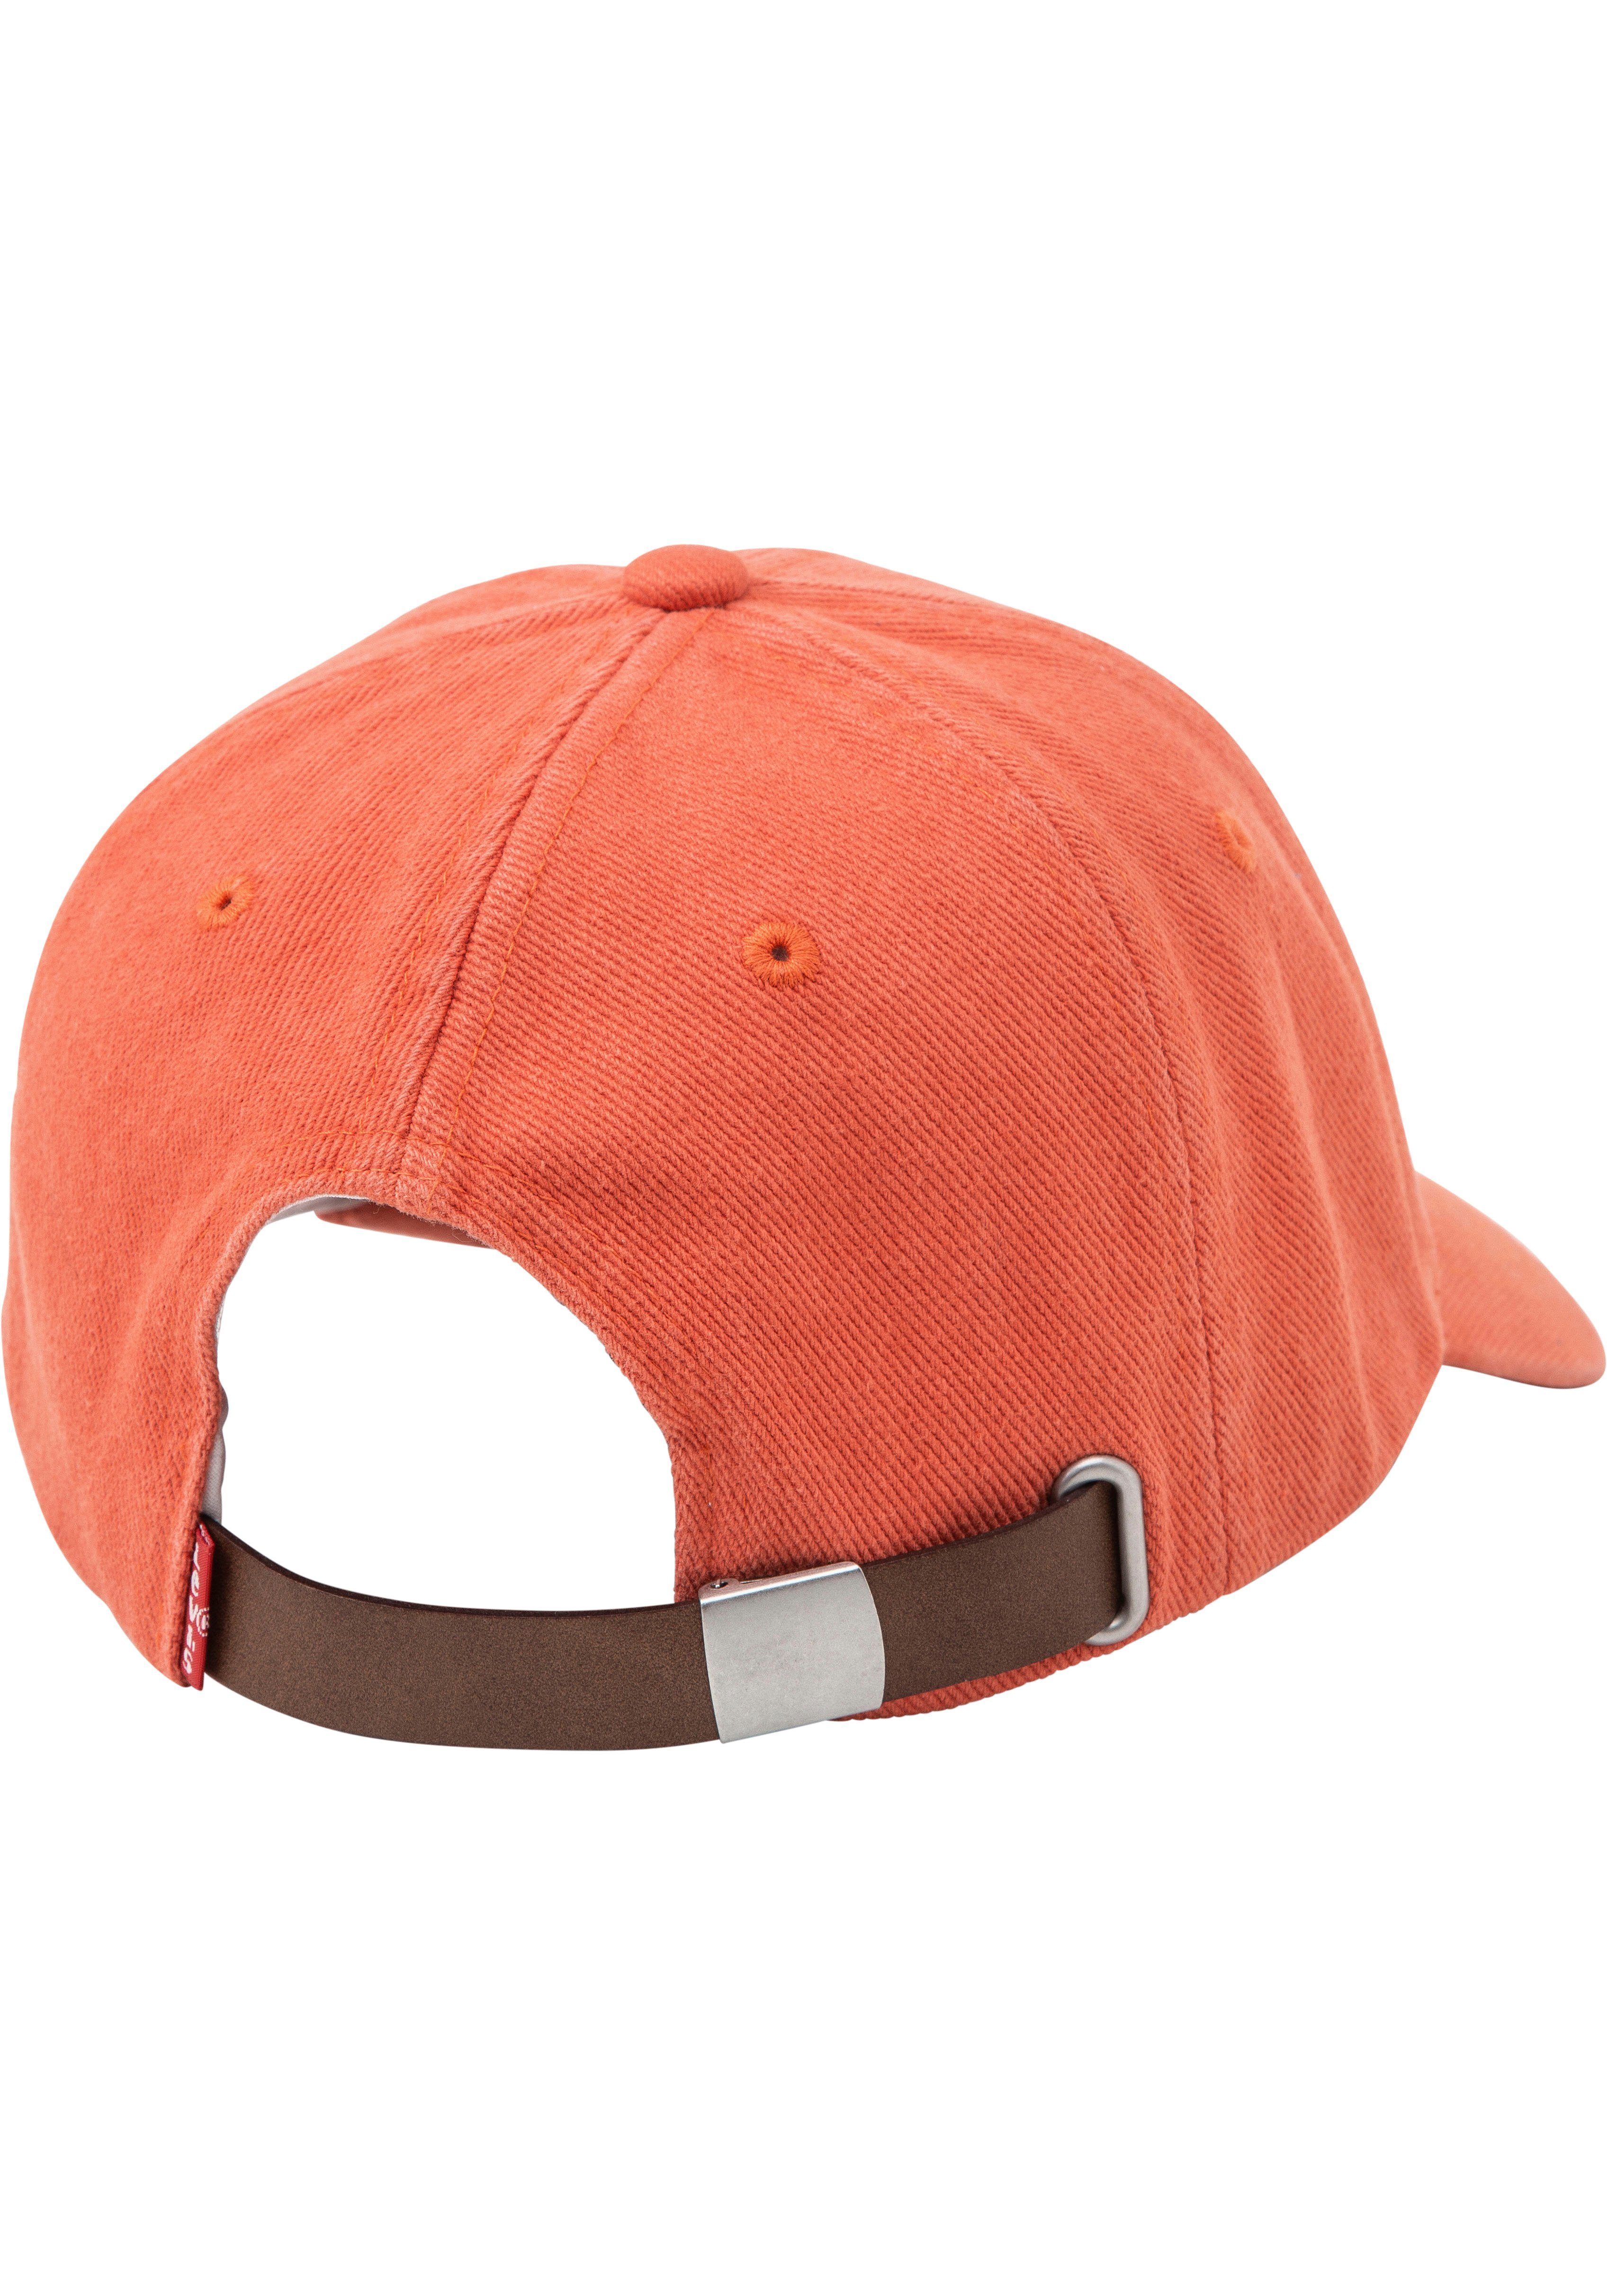 ESSENTIAL Cap LV dark orange Levi's® Baseball Cap